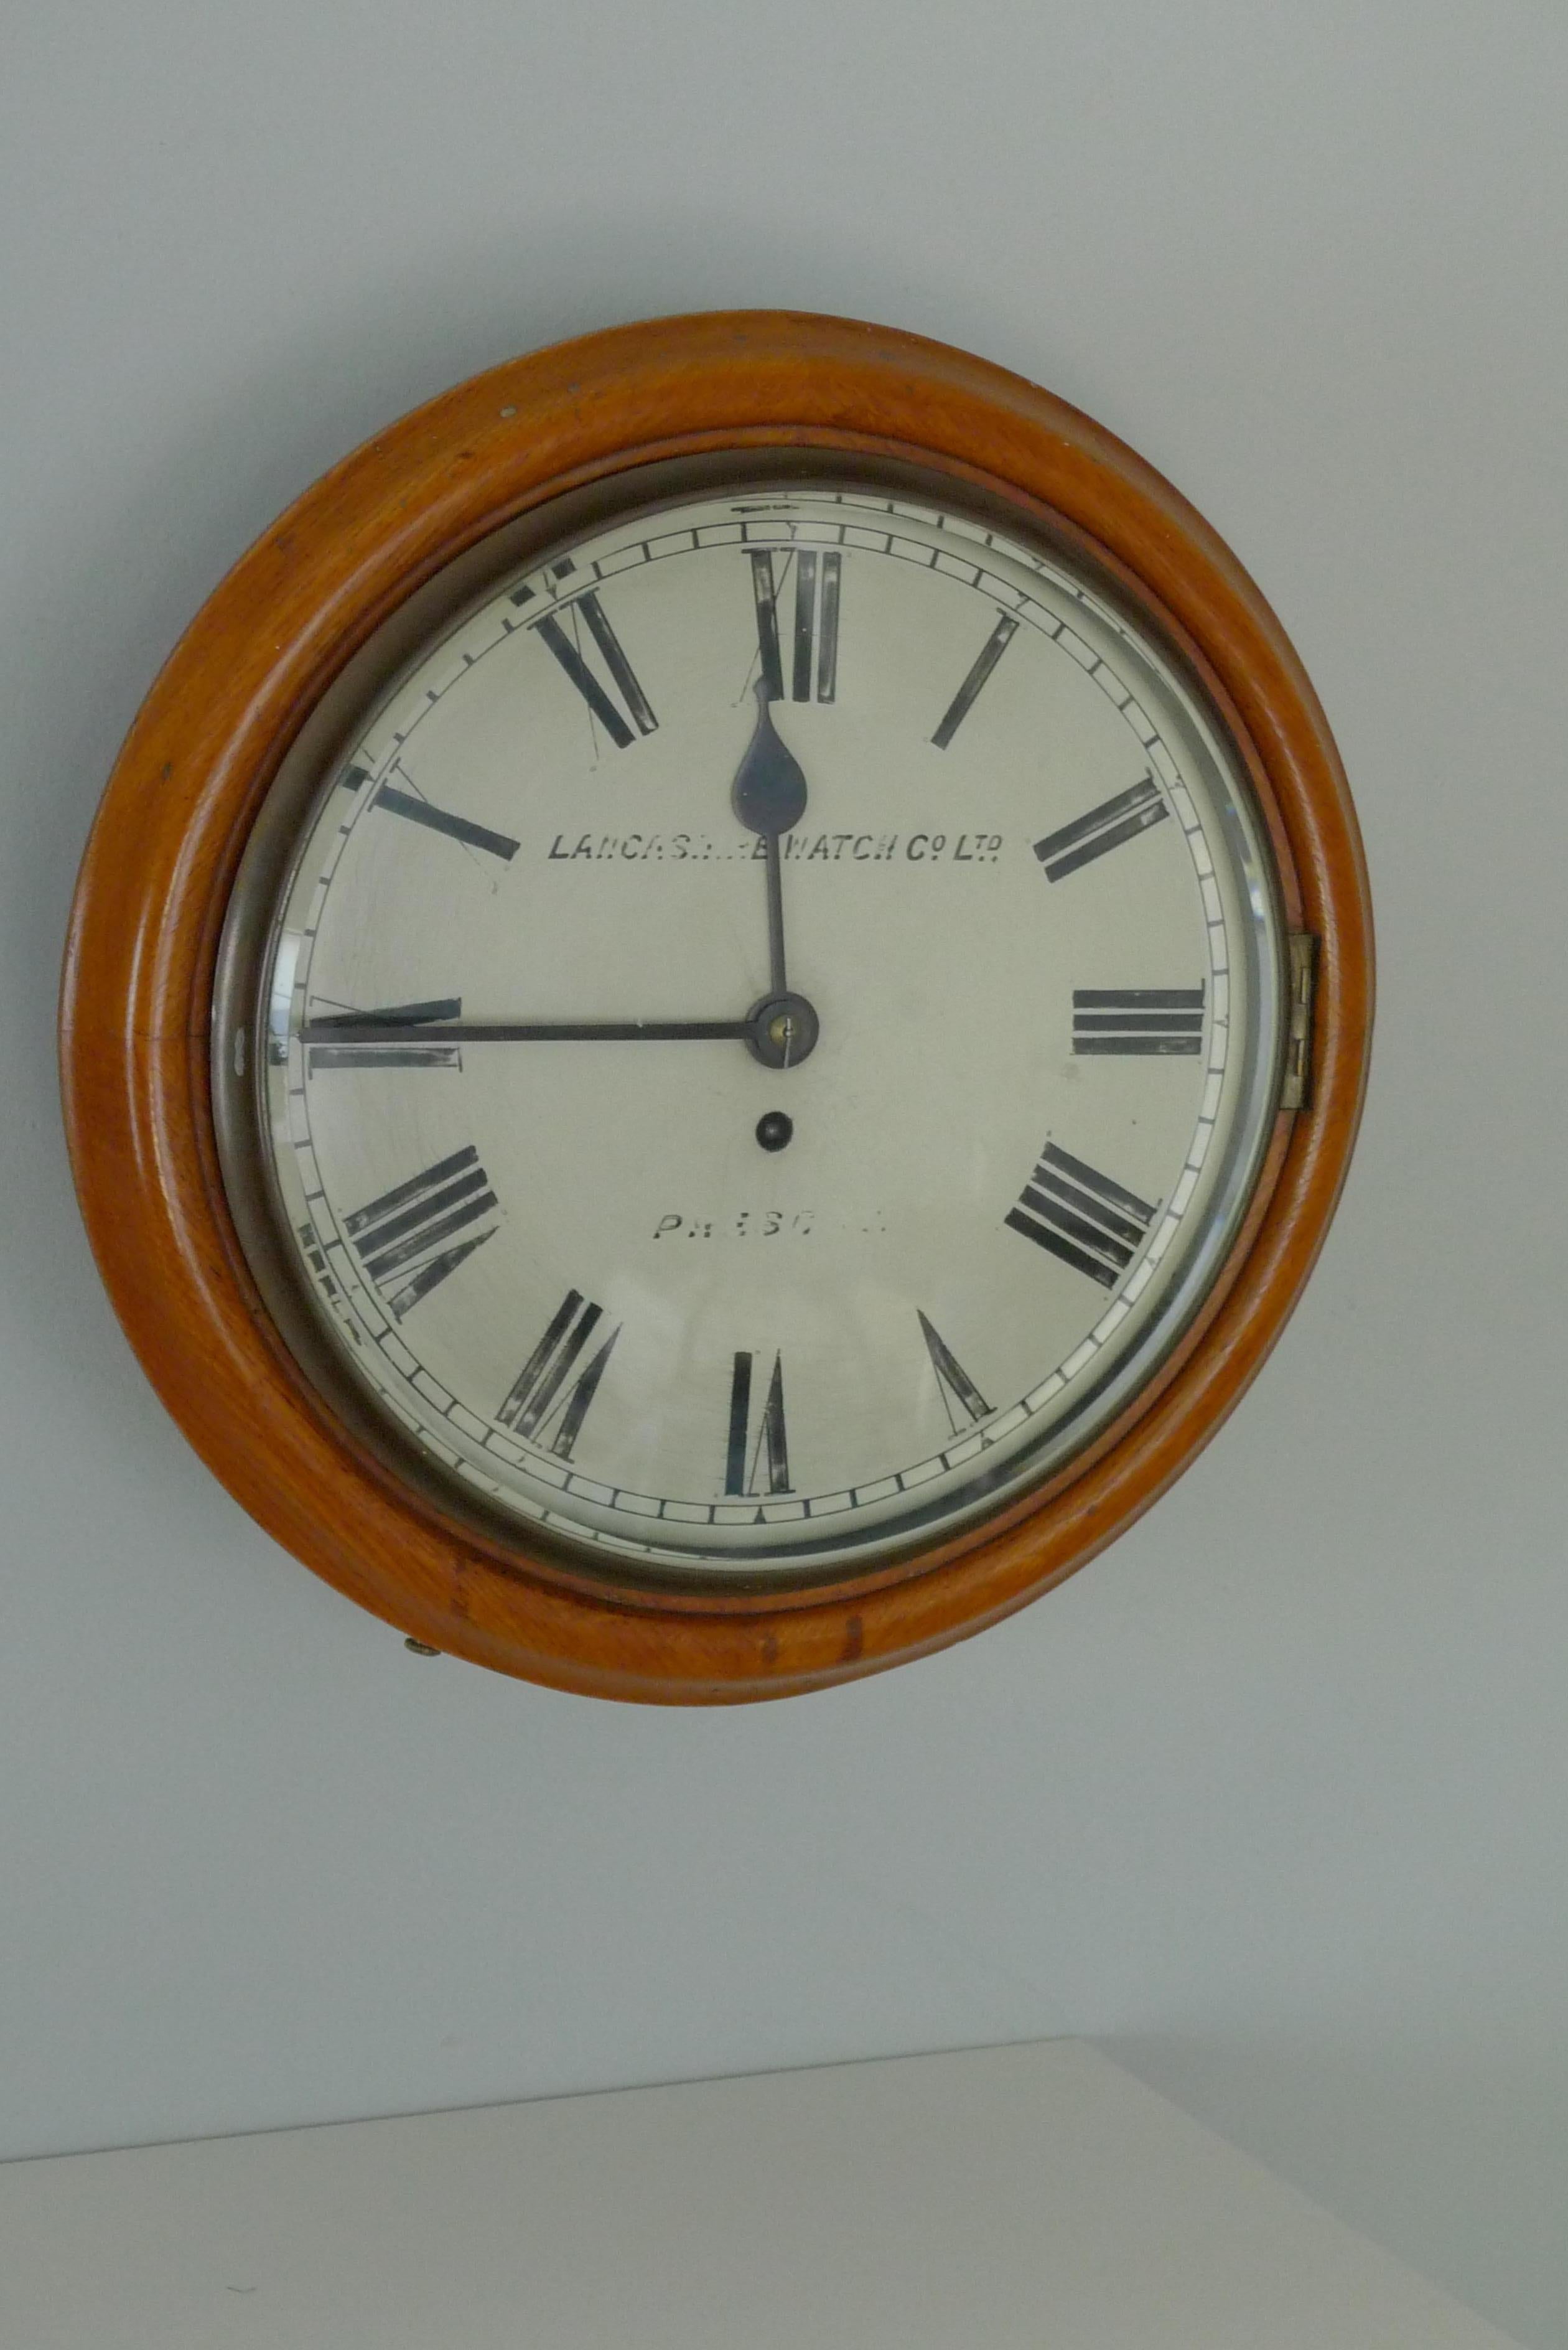 Laiton Horloge murale de Lancashire Watch Co. provenant d'une gare, fin du 19e siècle. Livraison gratuite en vente